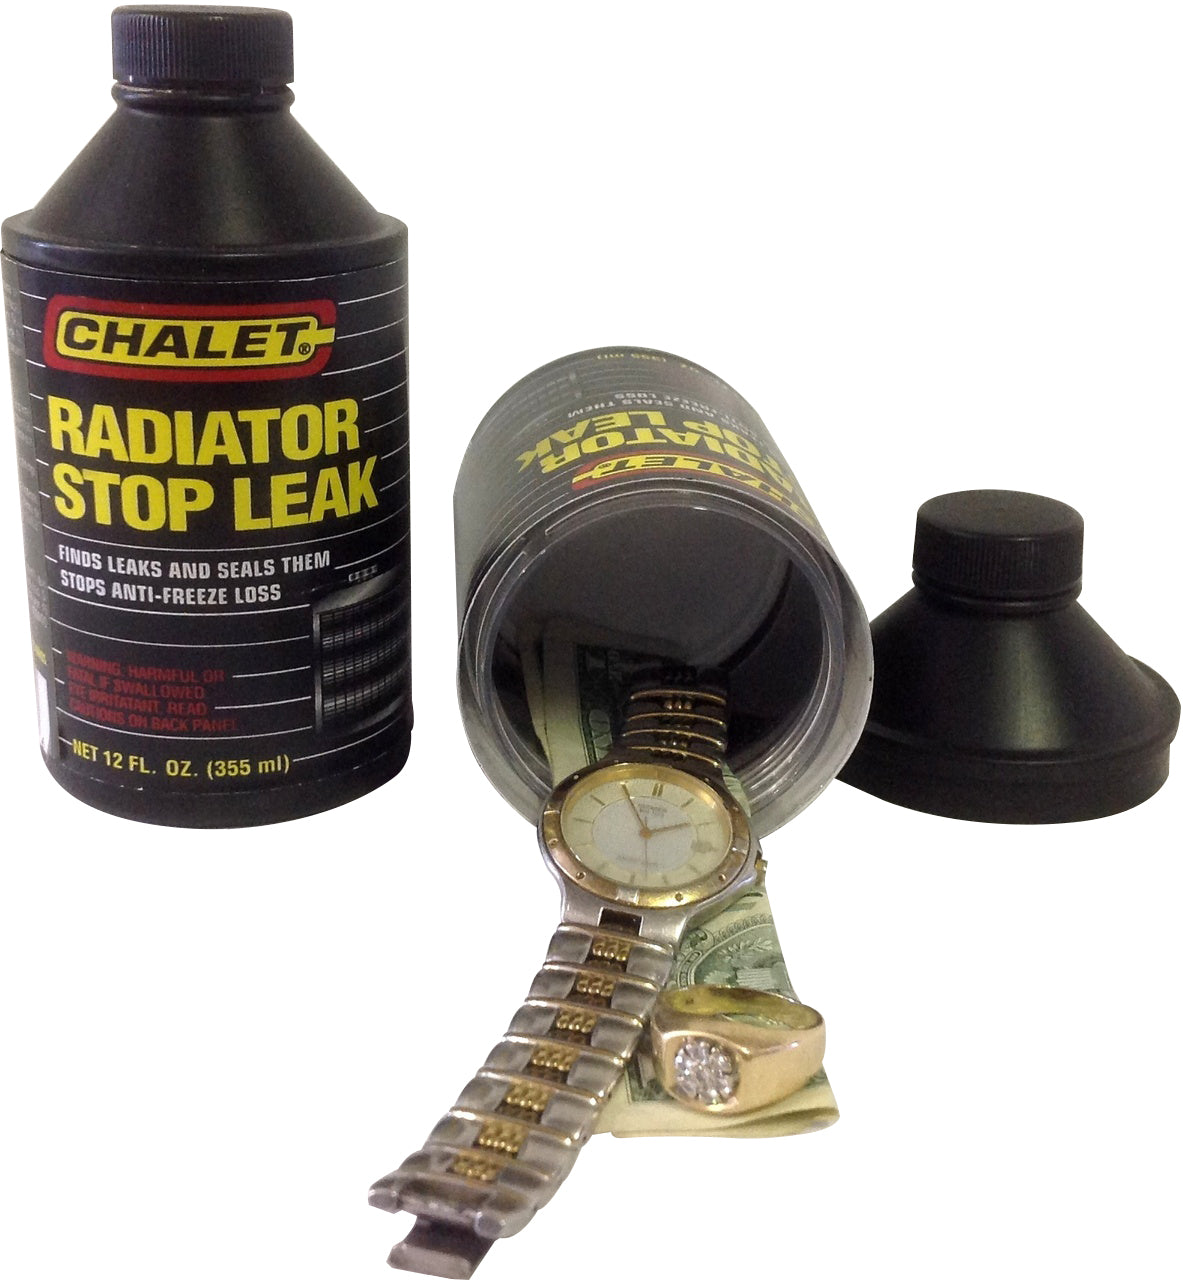 Chalet Radiator Stop Leak Diversion Safe